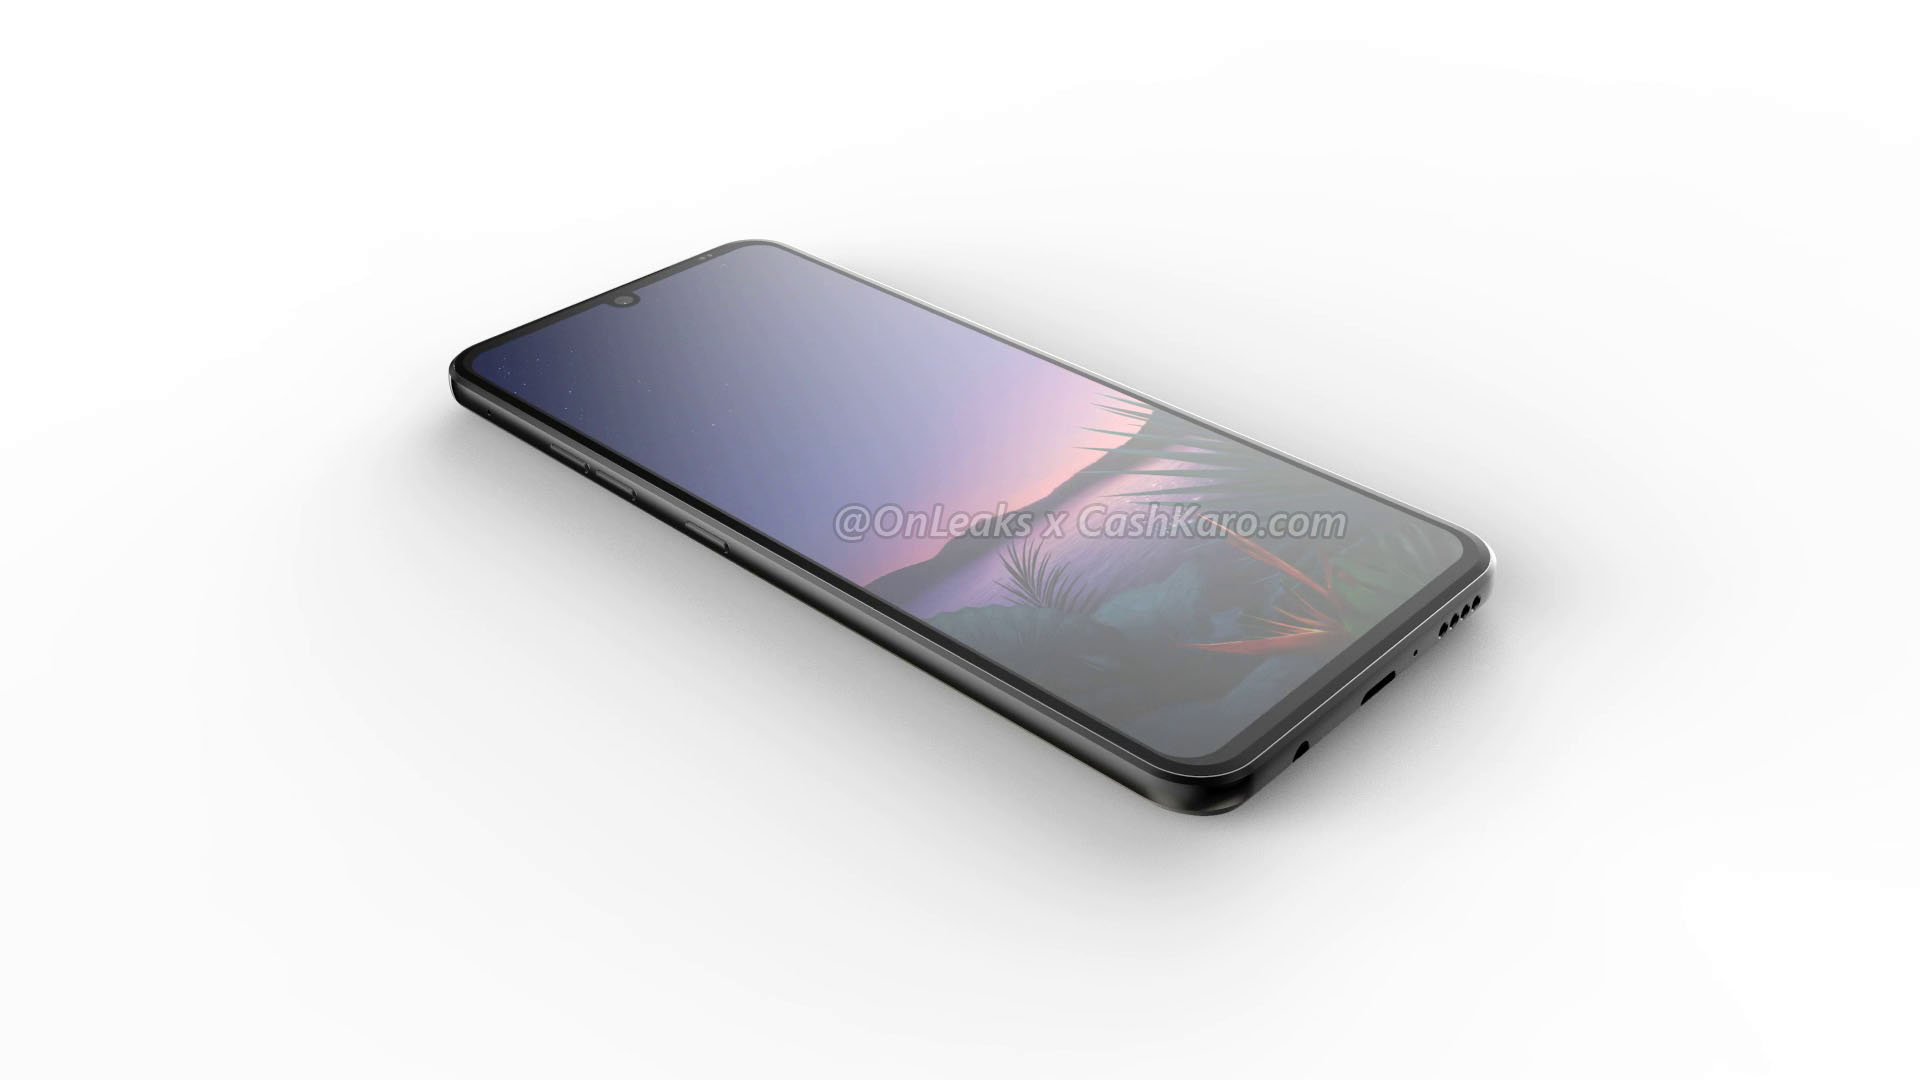 LG G9 lộ ảnh render với thiết kế màn hình giọt nước,
vân tay trong màn hình, 4 camera sau, có jack 3.5mm